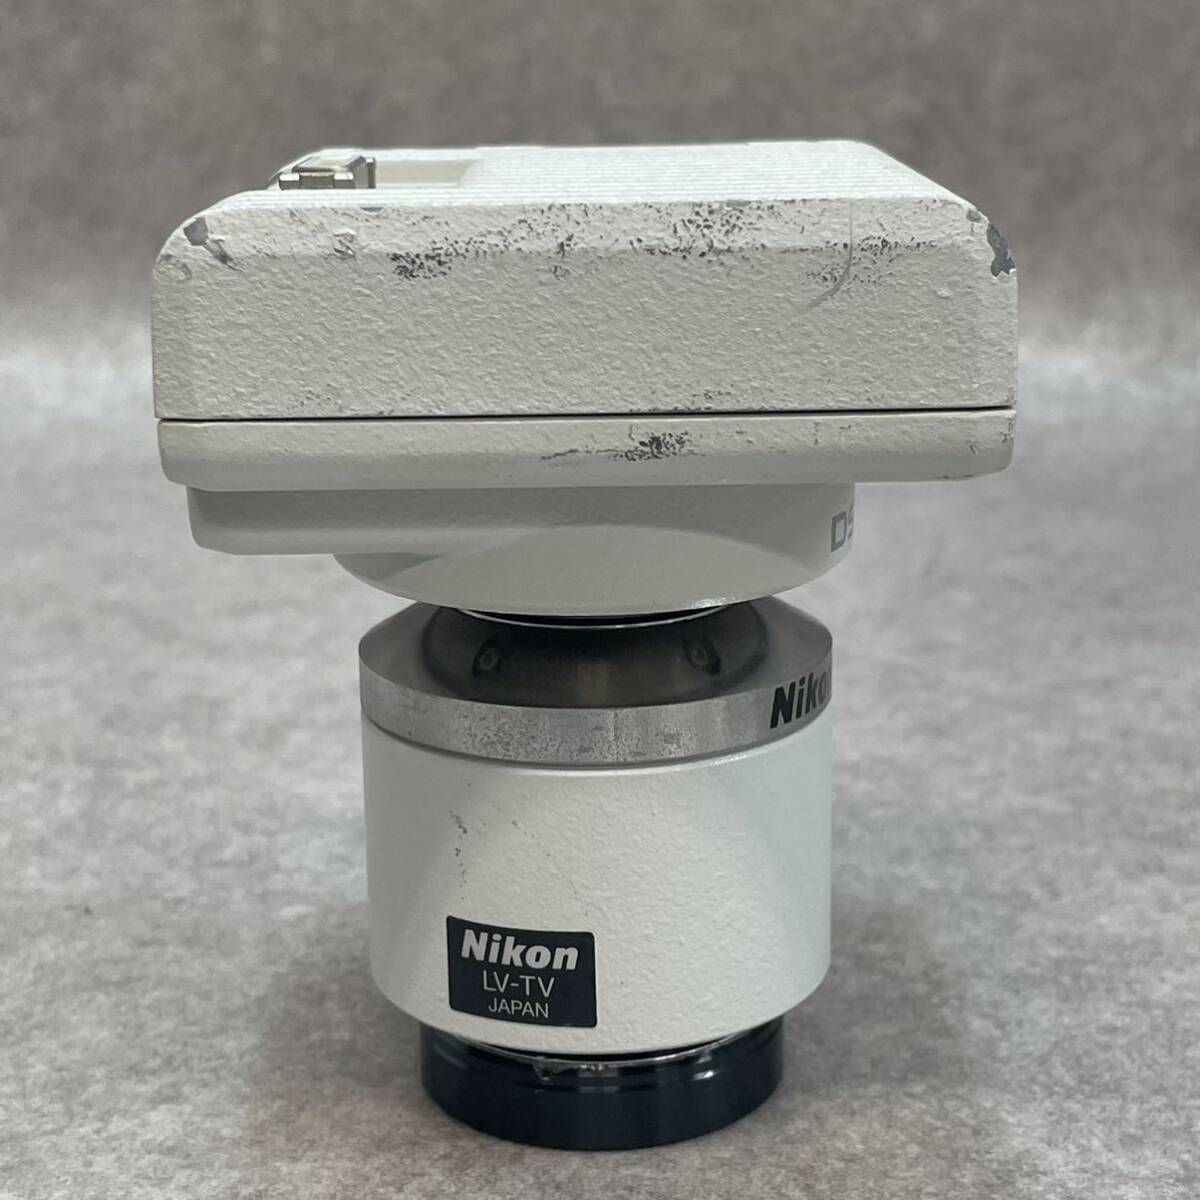 J2630★Nikon Digital Sight DS-Fi1 顕微鏡用デジタルカメラ //Nikon LV-TV 三眼管アダプター 付き _画像2